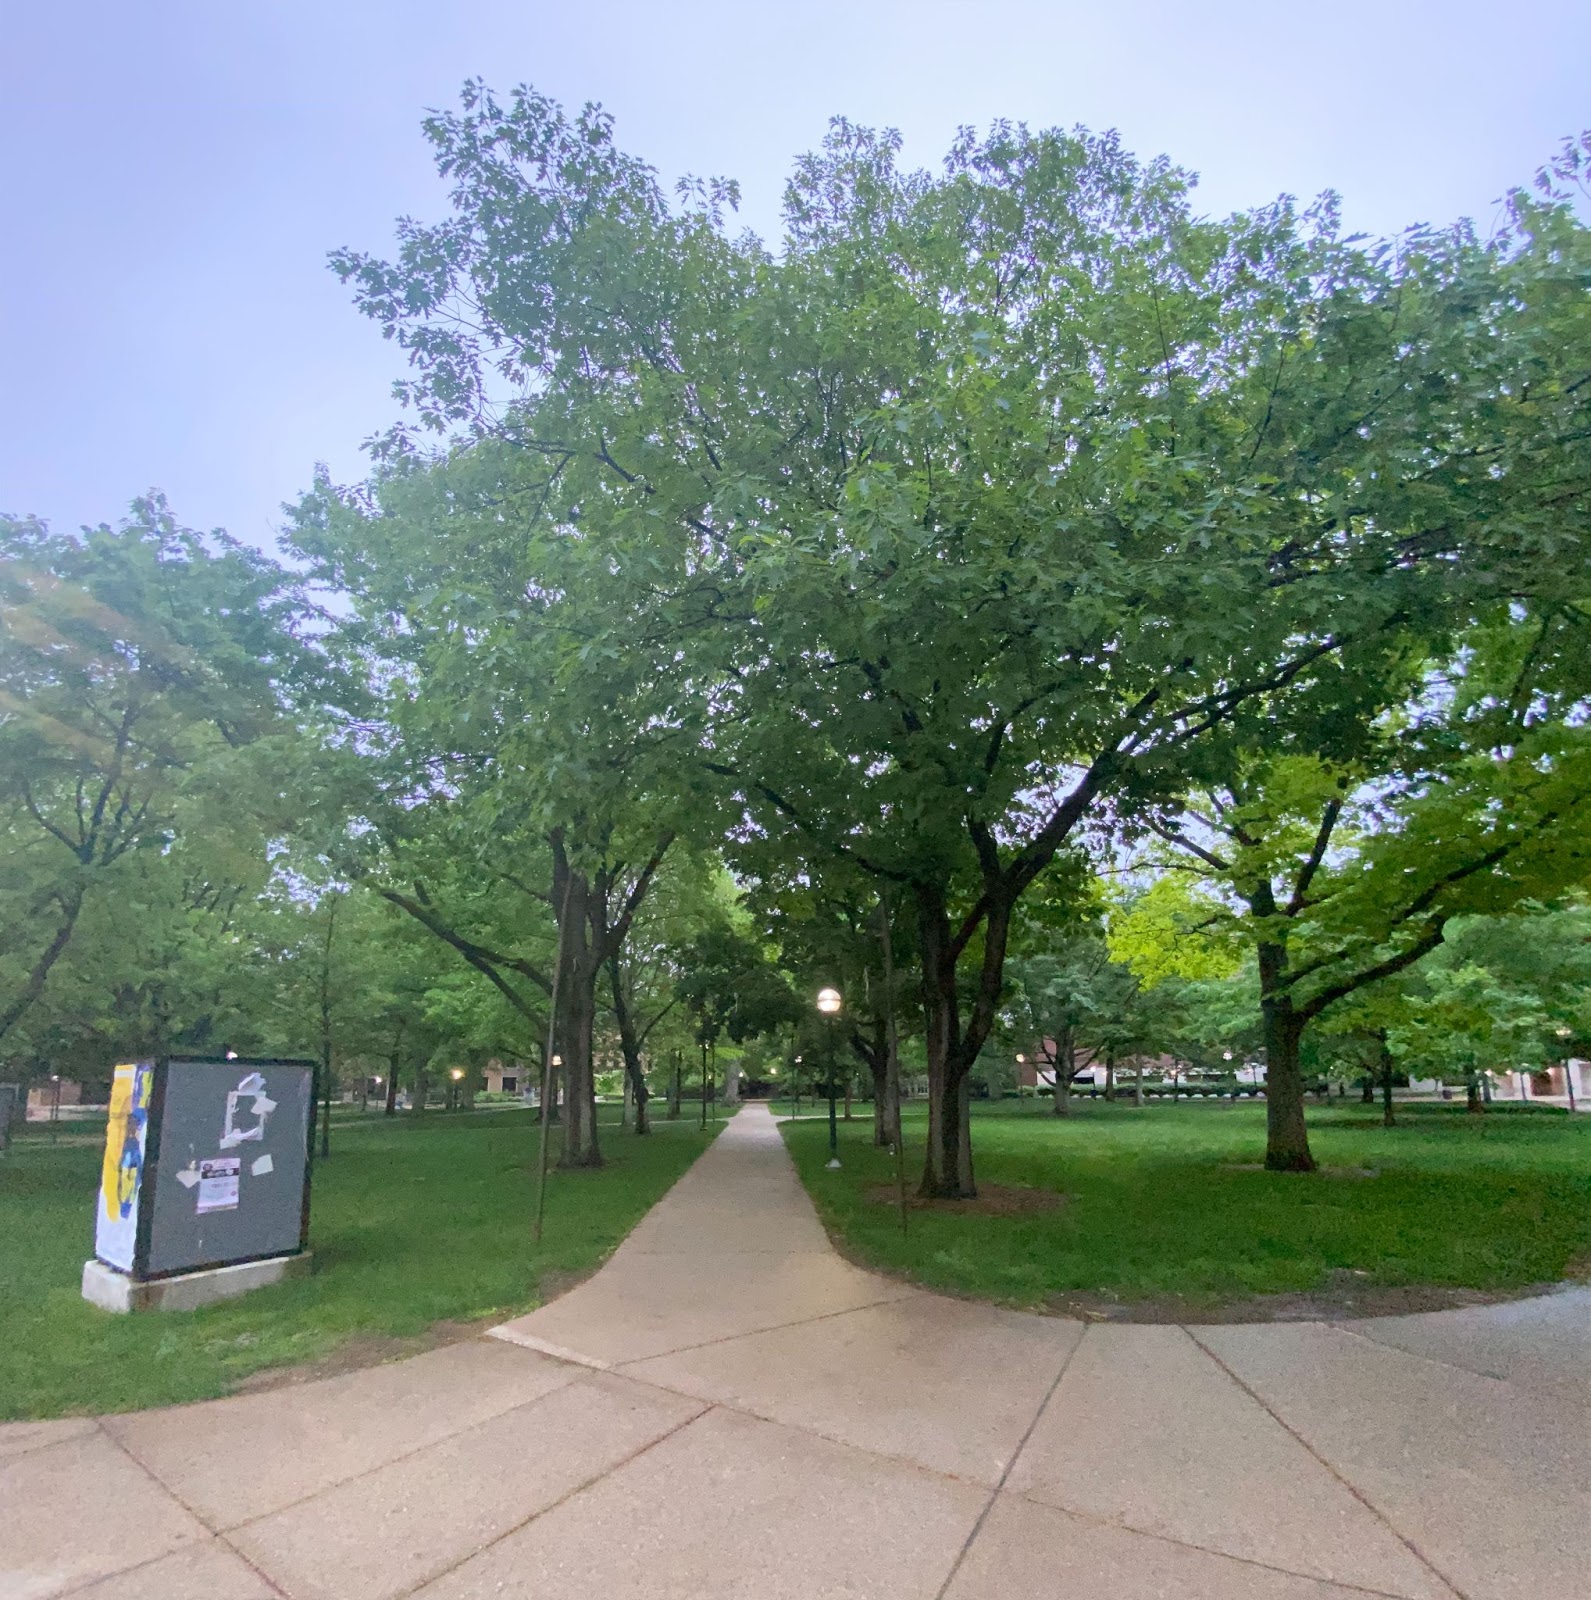 tree lined sidewalk on campus